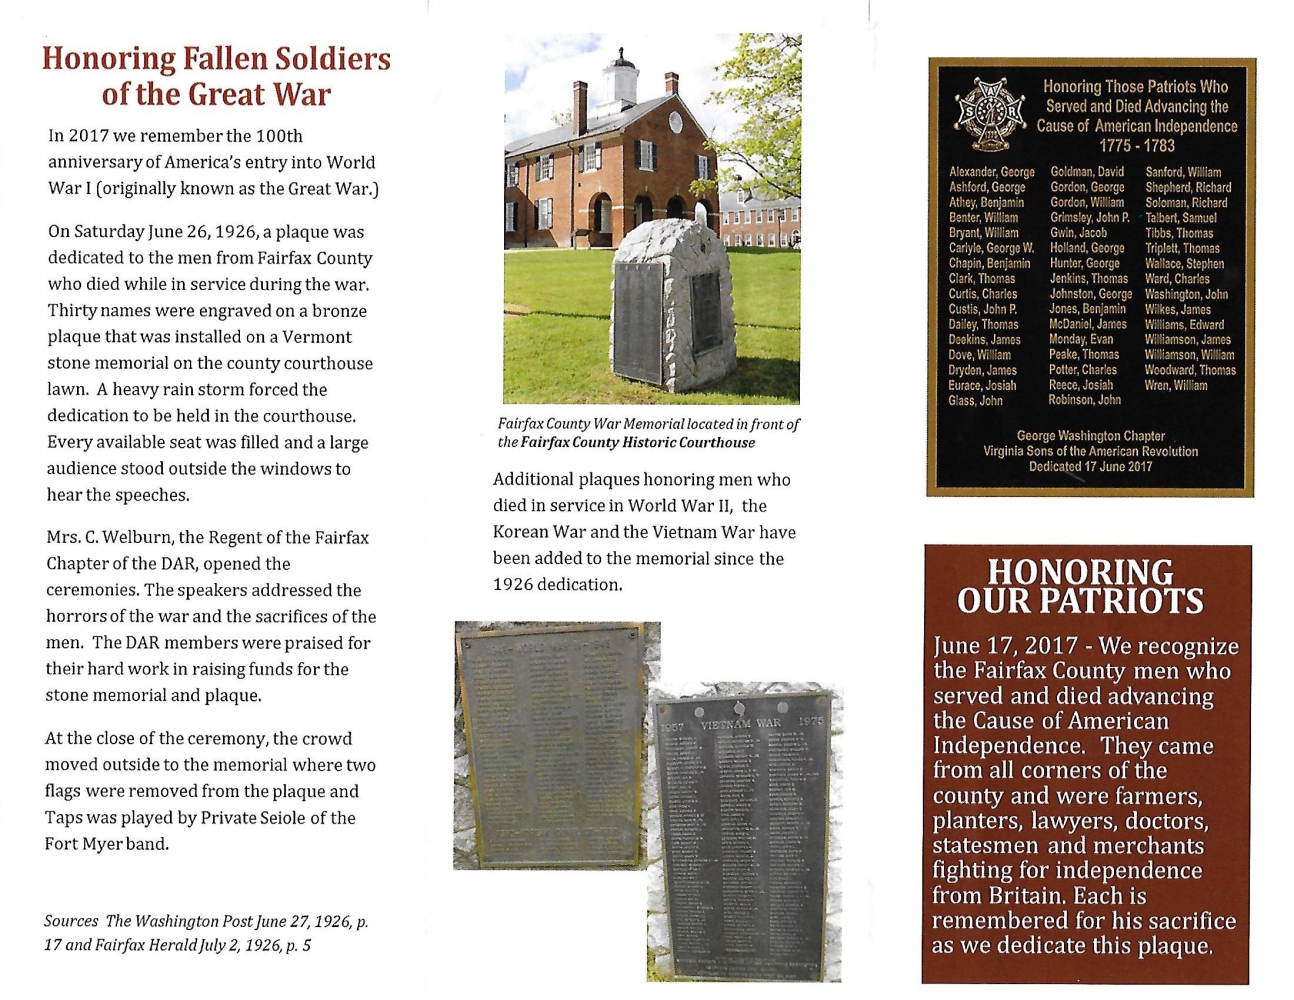 Fairfax County [Virginia] War Memorial, USA